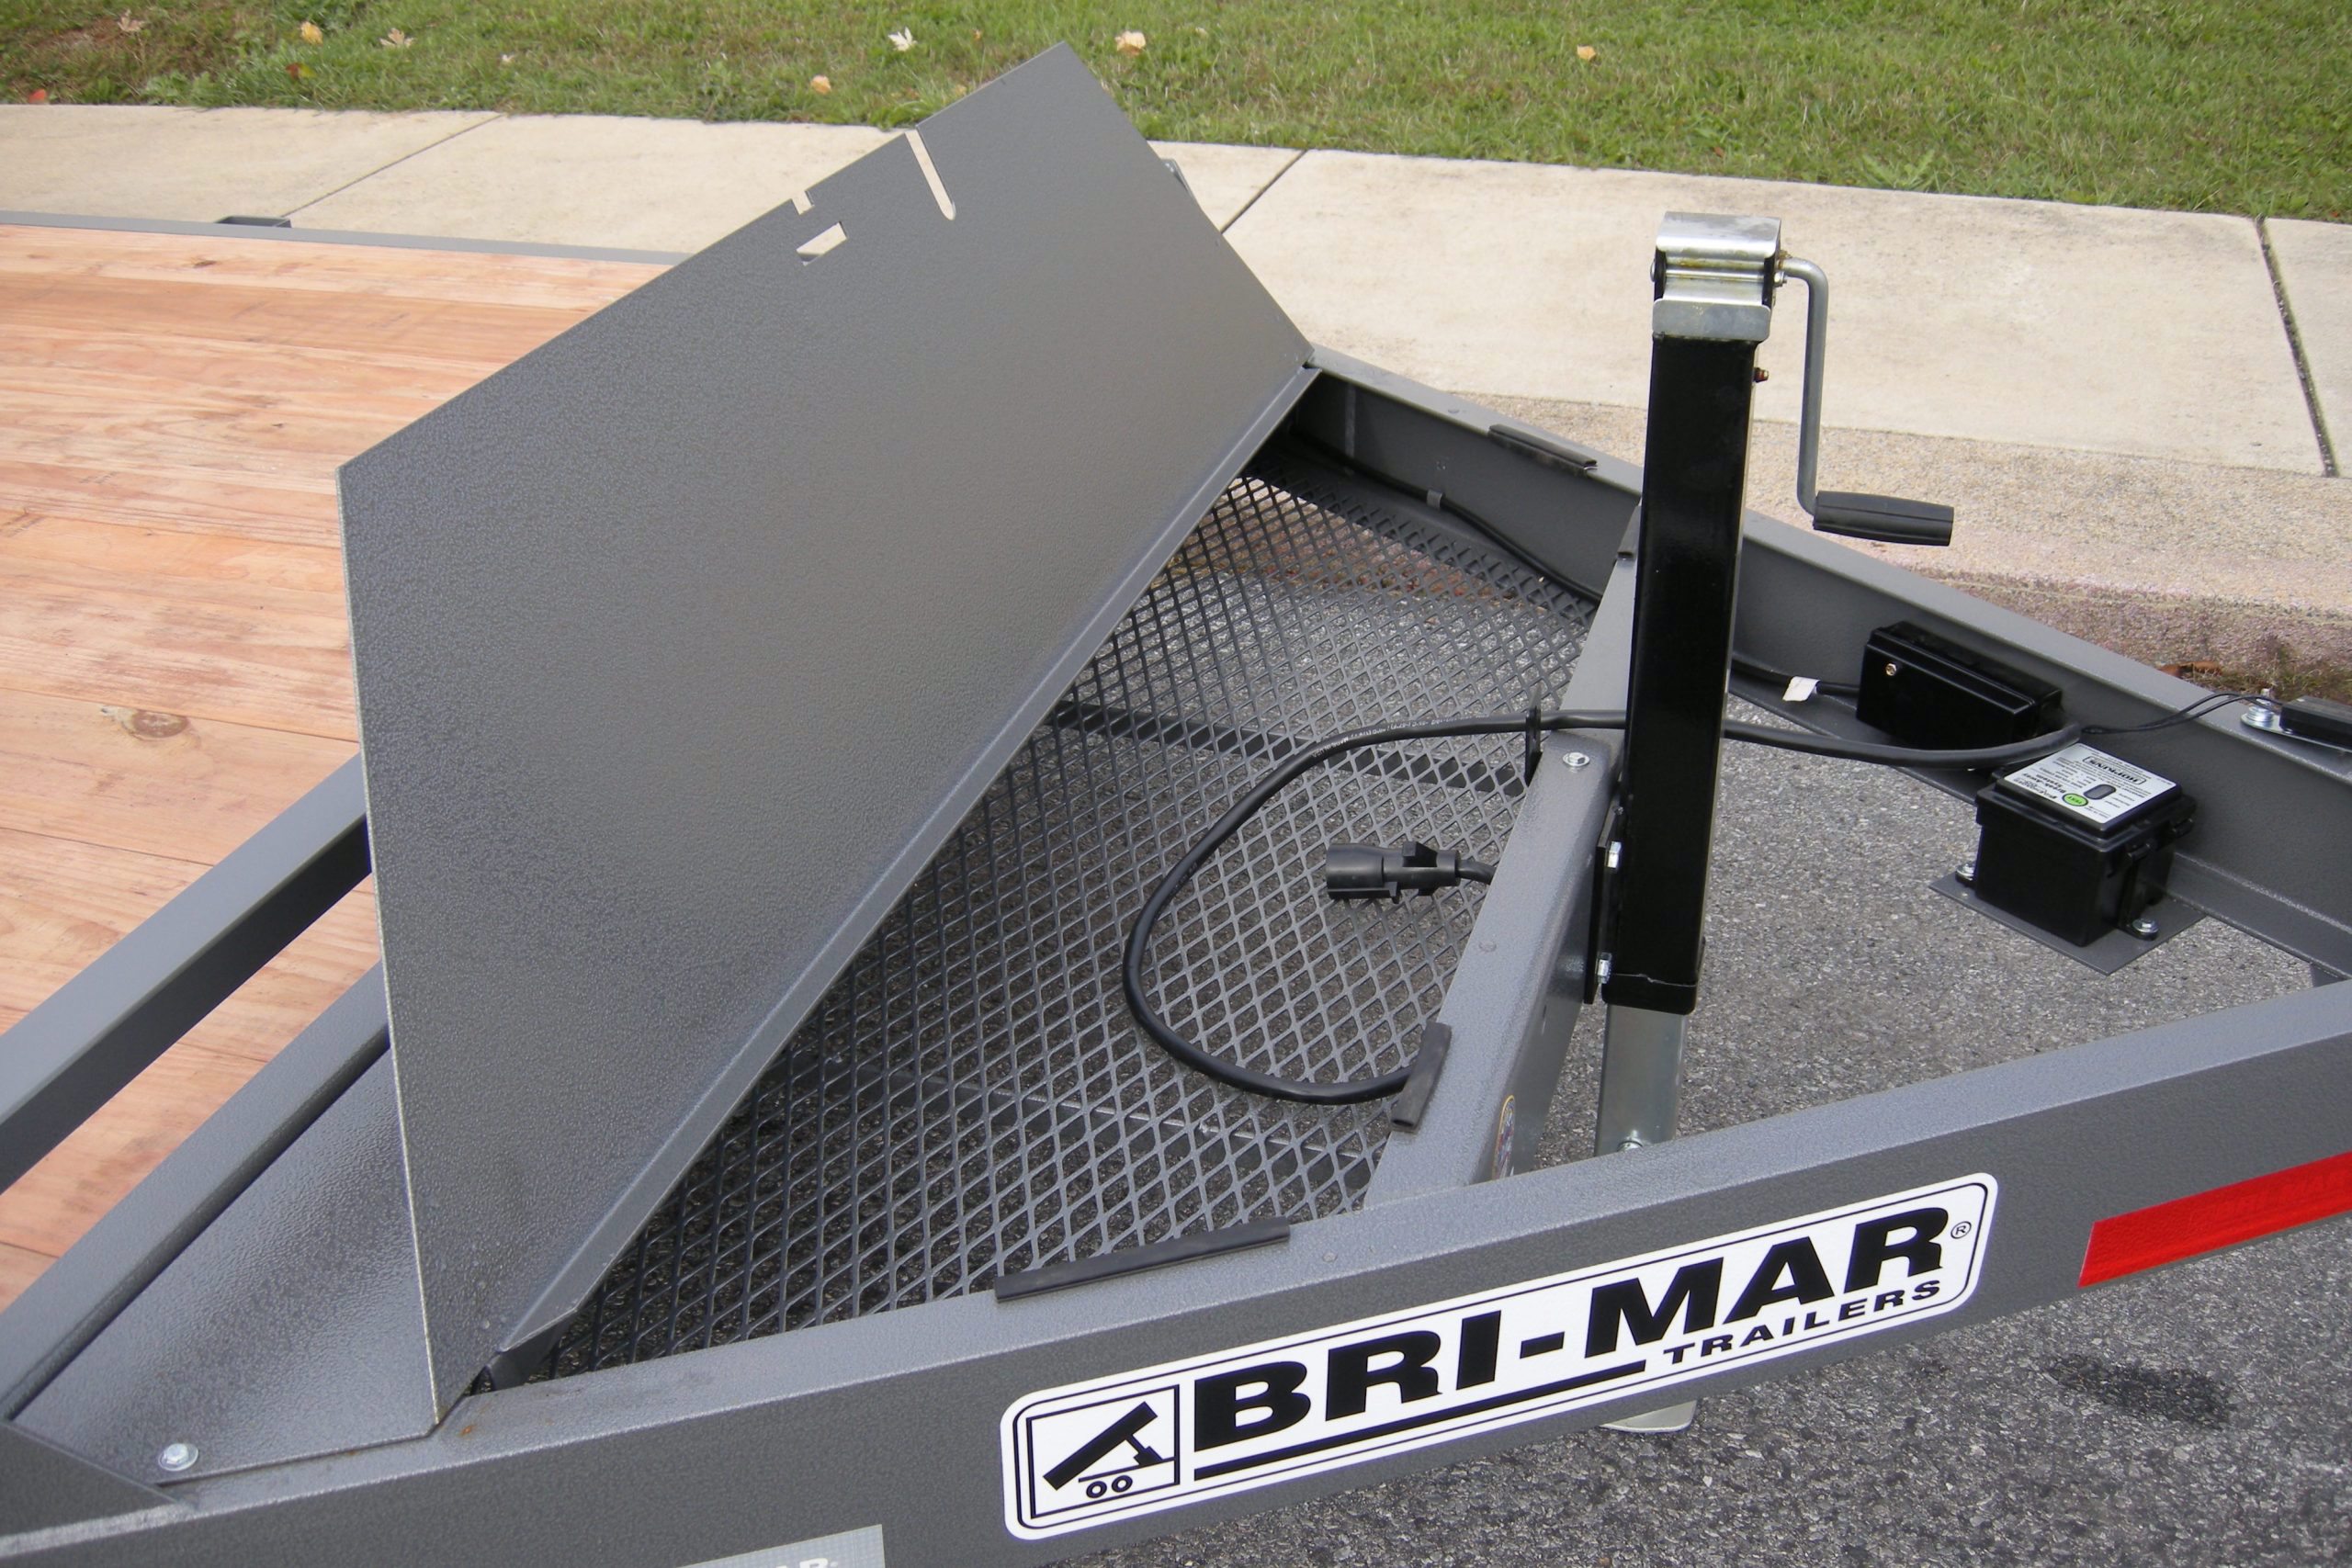 Bri-Mar EH Series Equipment Haulers